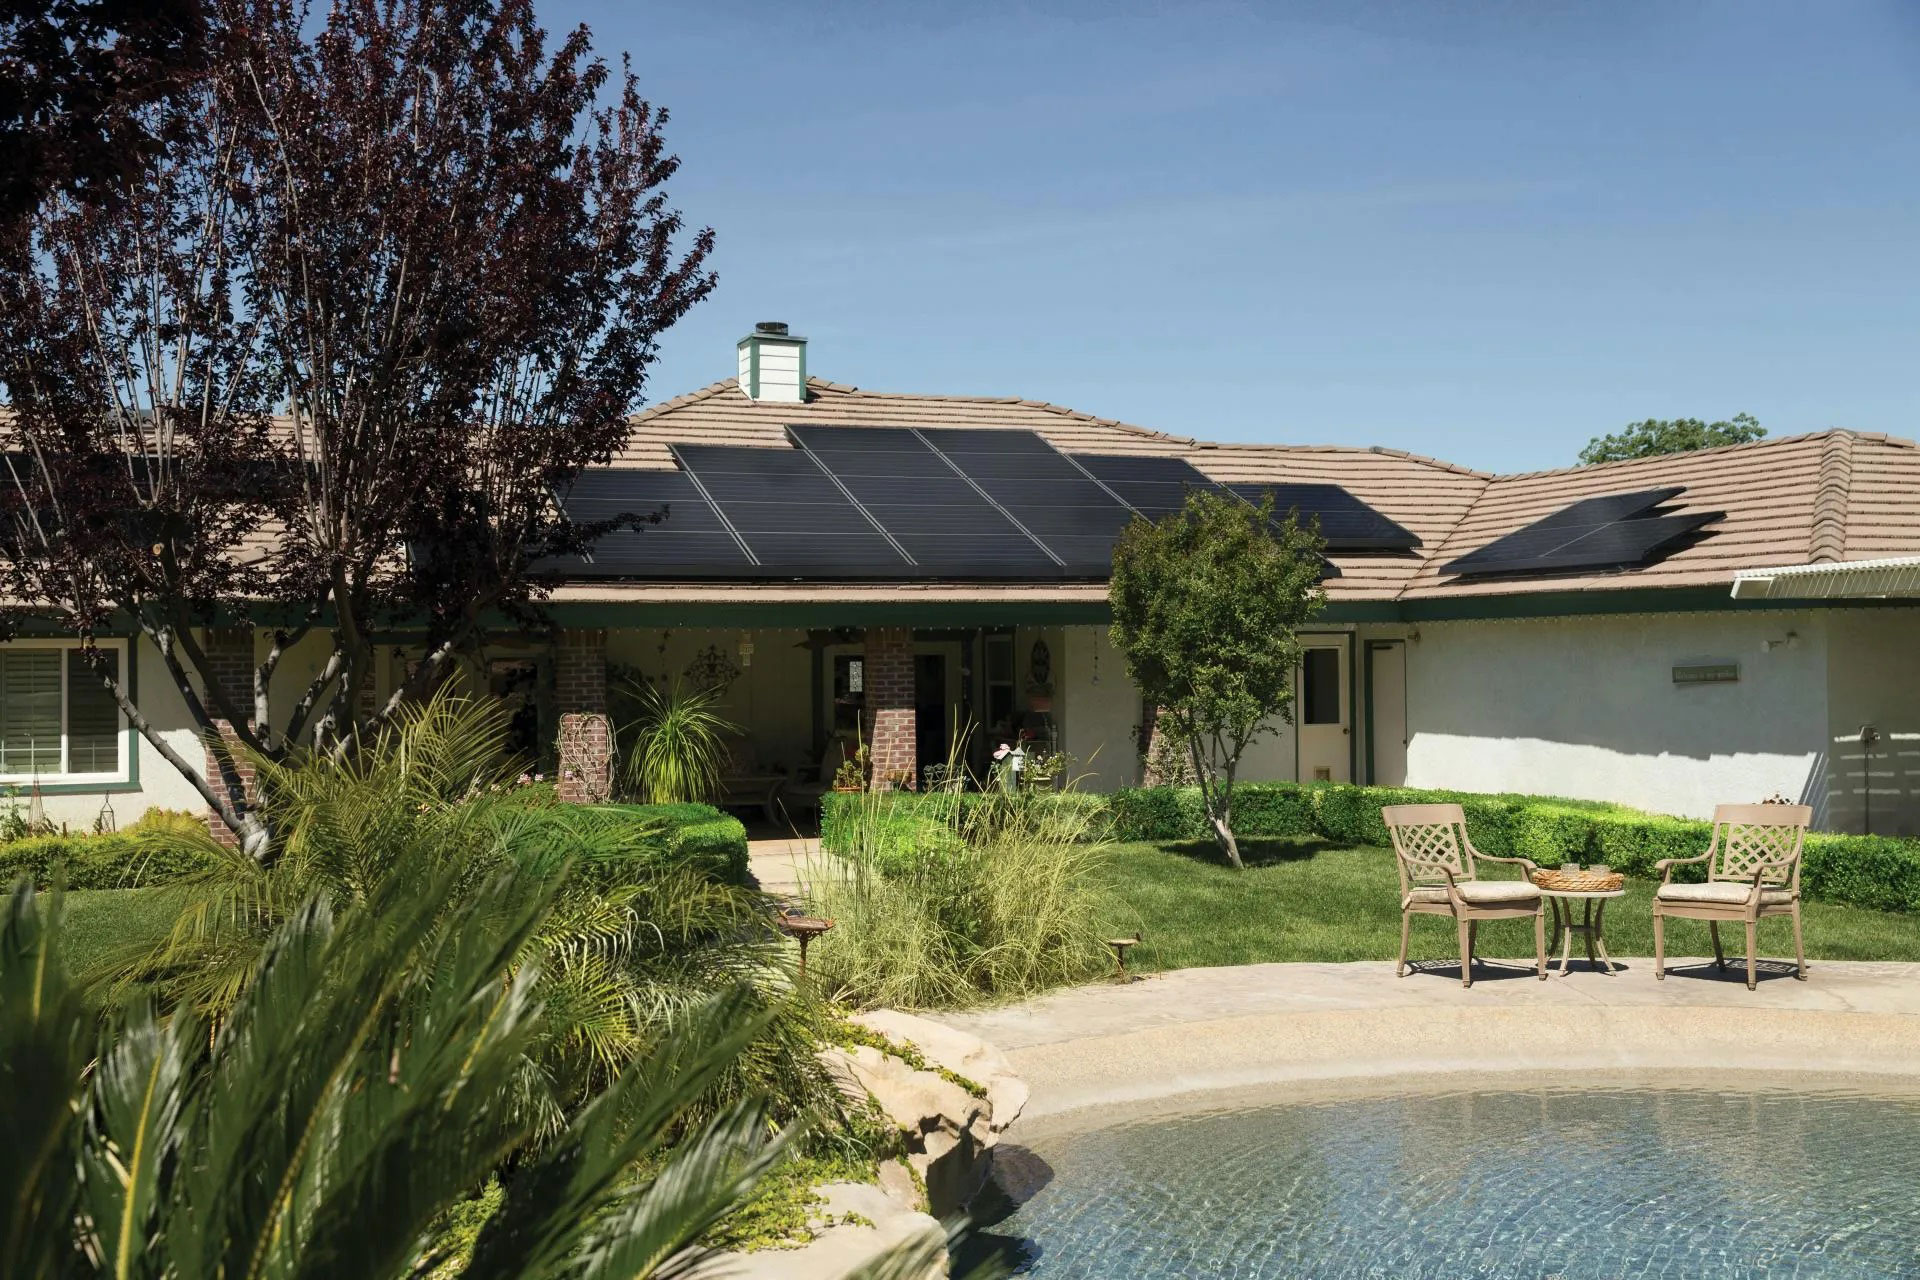 vivienda con paneles solares autosuficiente energeticamente